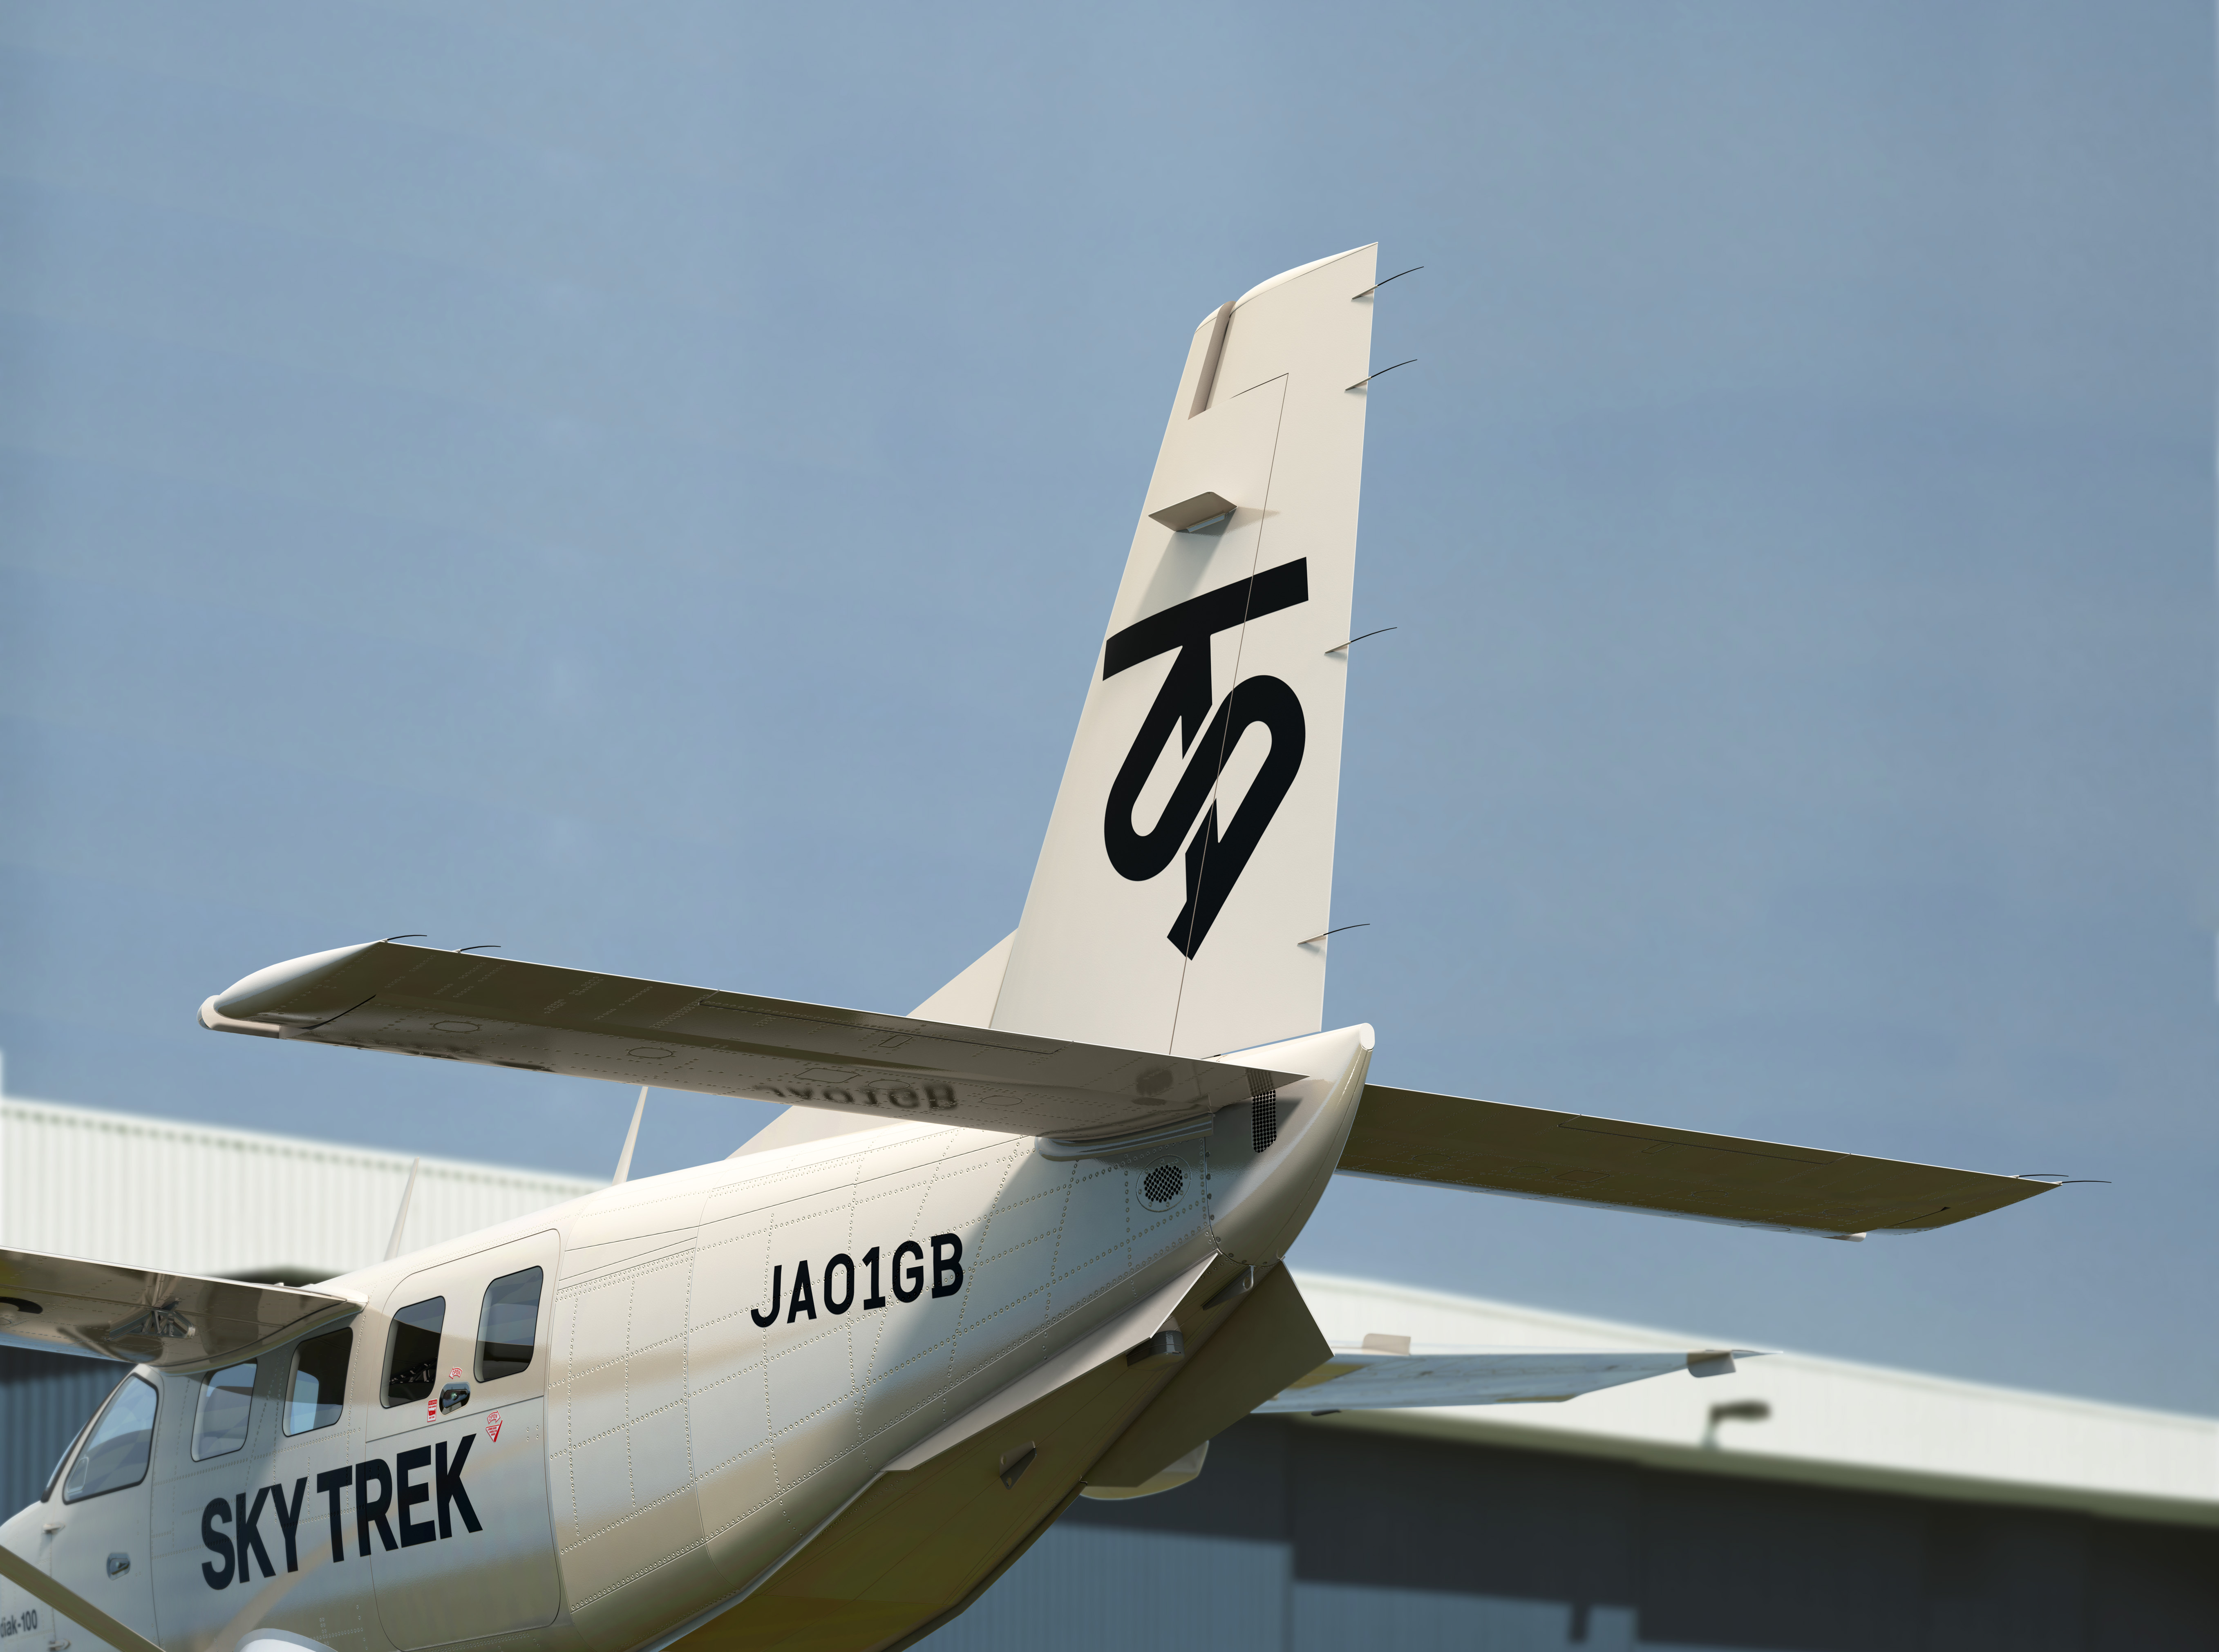 日本初の会員制小型航空機活用による総合旅行サービス Sky Trek 11月7日より 第一期 会員募集を開始 株式会社せとうちホールディングスのプレスリリース